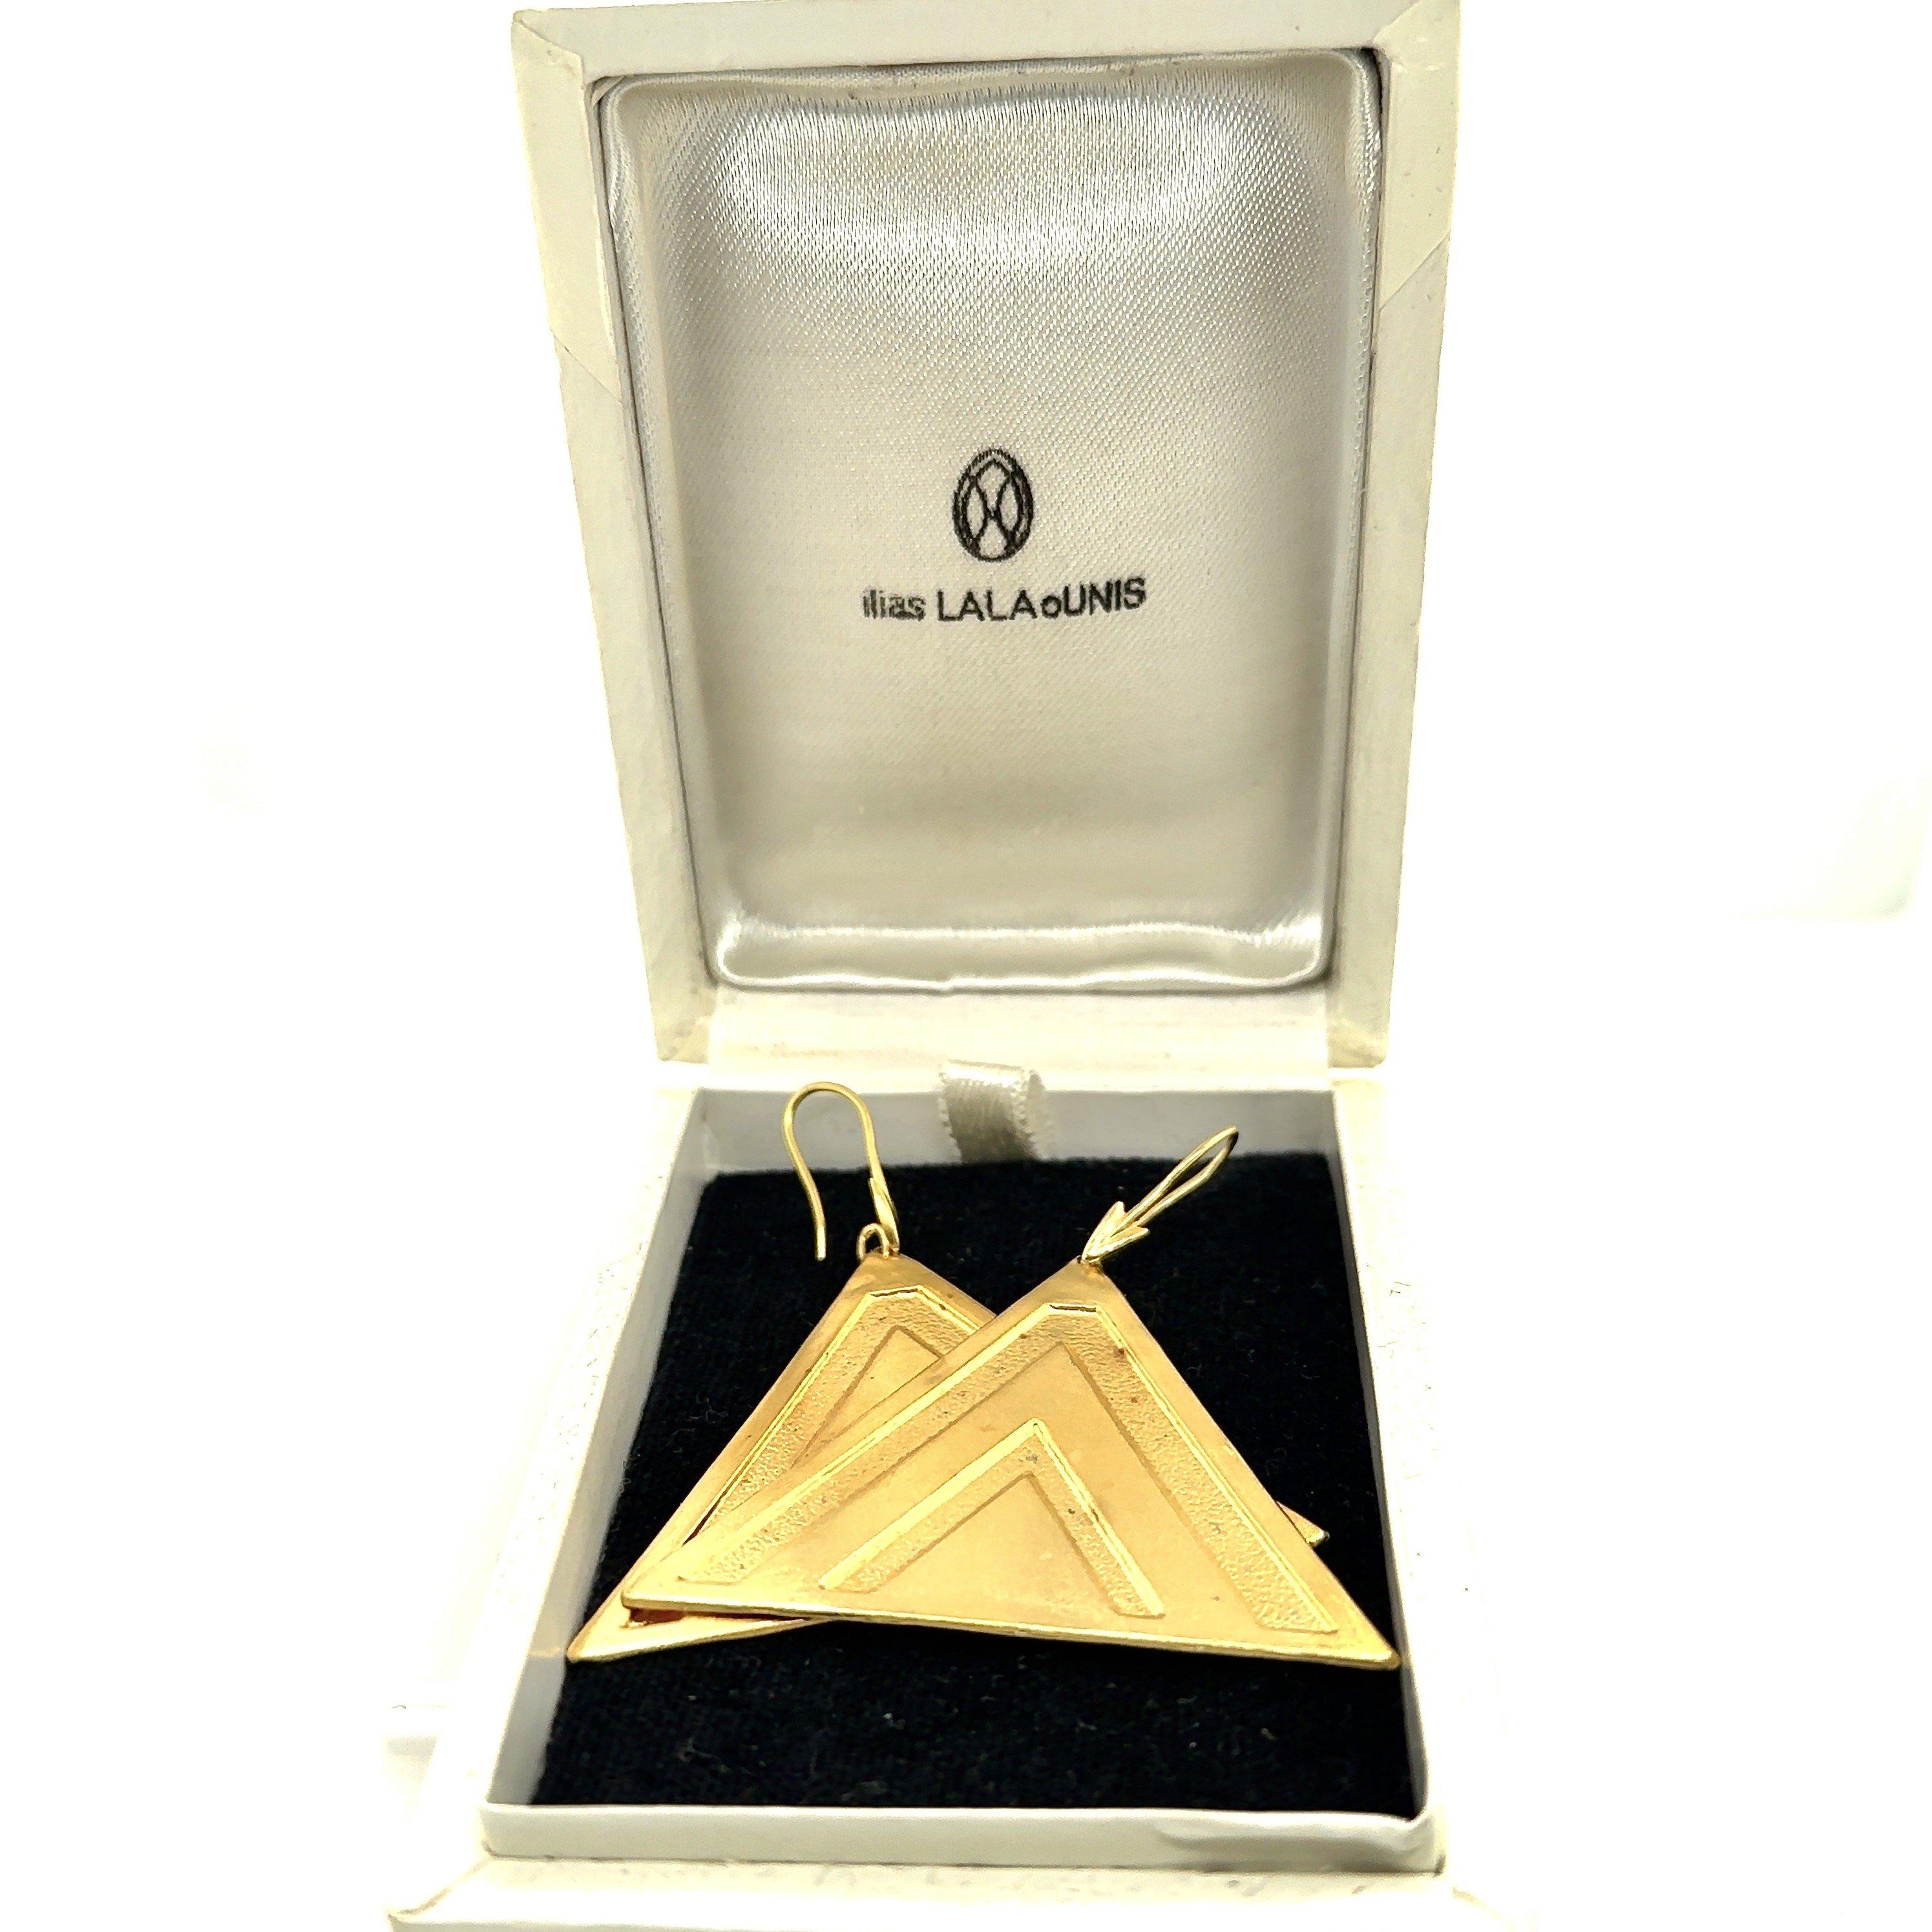 Diese dreieckigen, strukturierten Ohrringe von Ilias Lalaounis Greece sind aus 18 Karat Gelbgold gefertigt. Die Dreiecke messen ungefähr 2